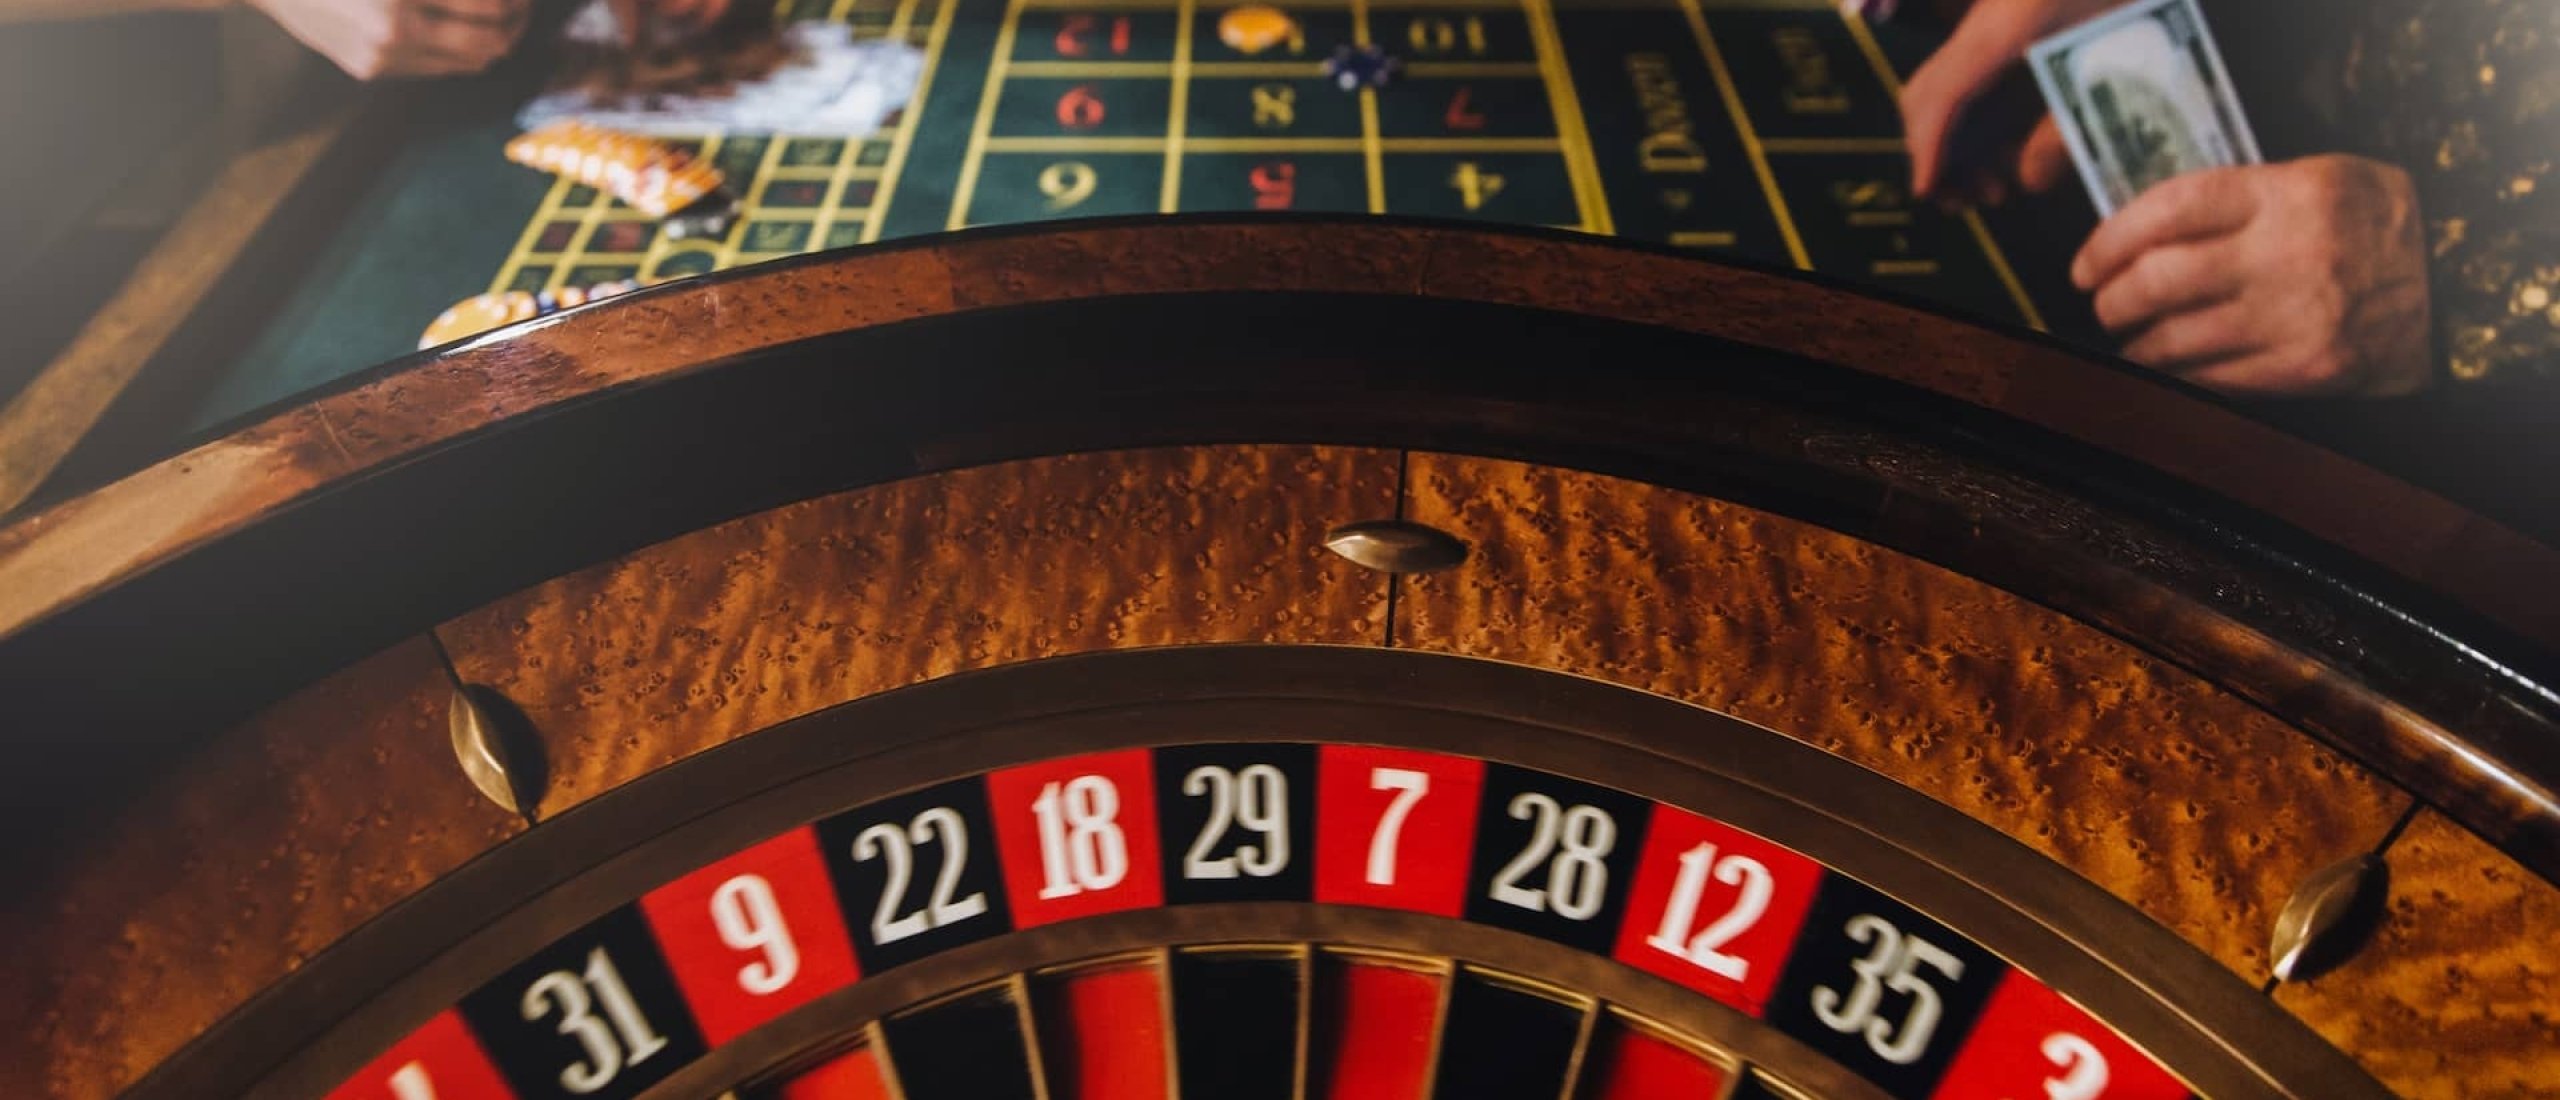 Casinoreclames en Rolmodellen: Wat gaat er veranderen?